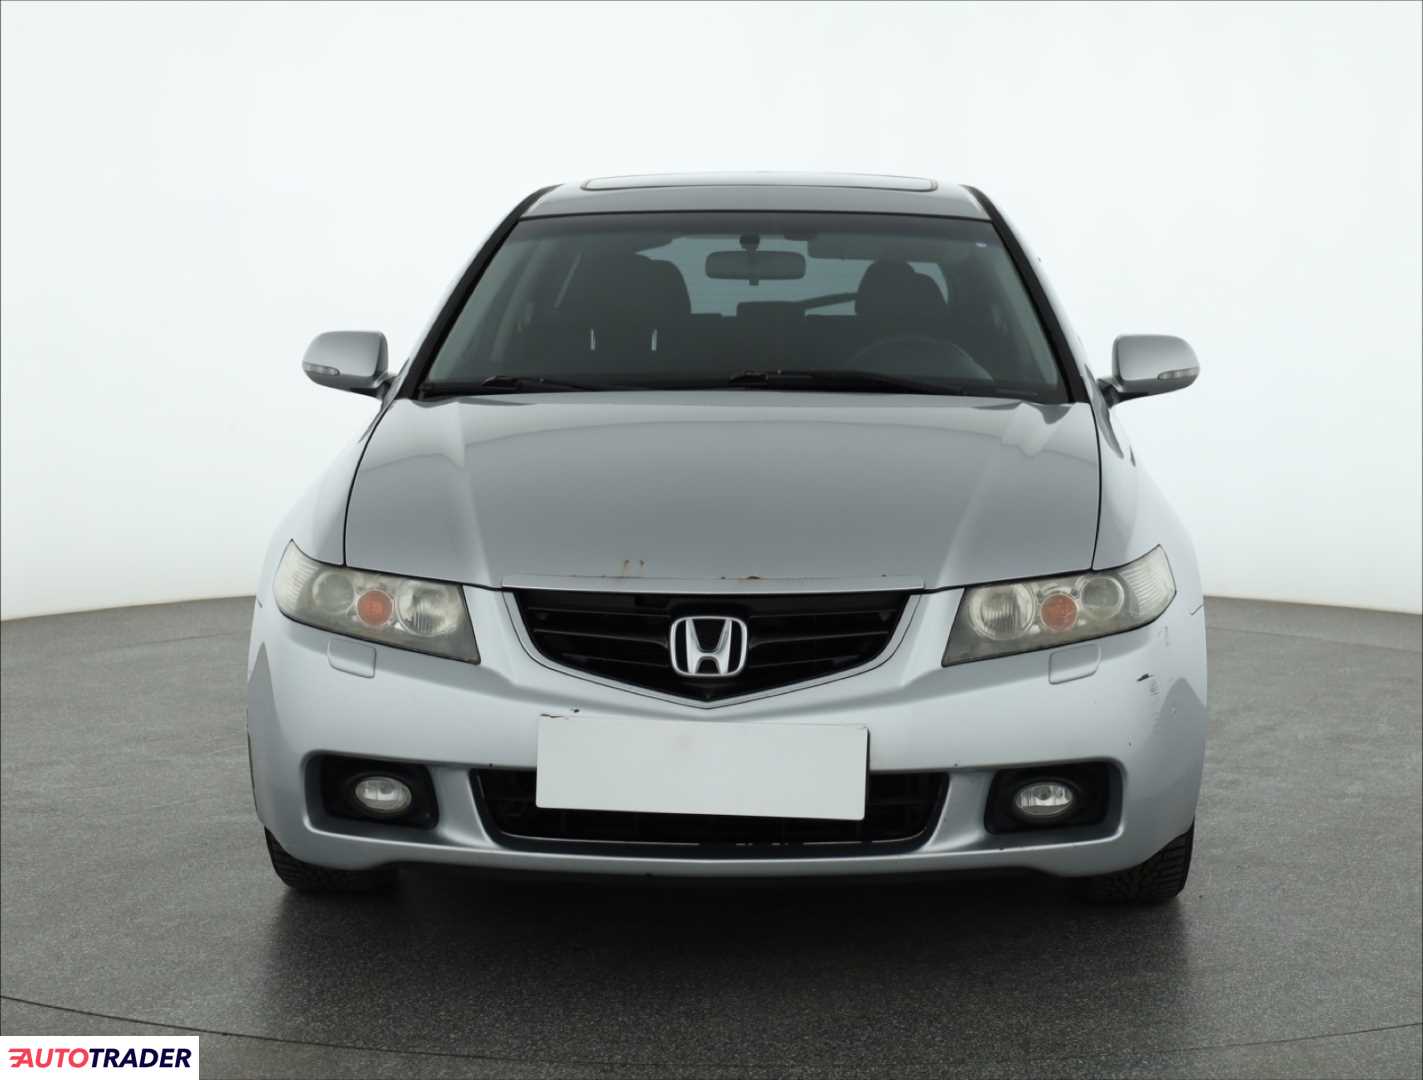 Honda Accord 2003 2.4 187 KM